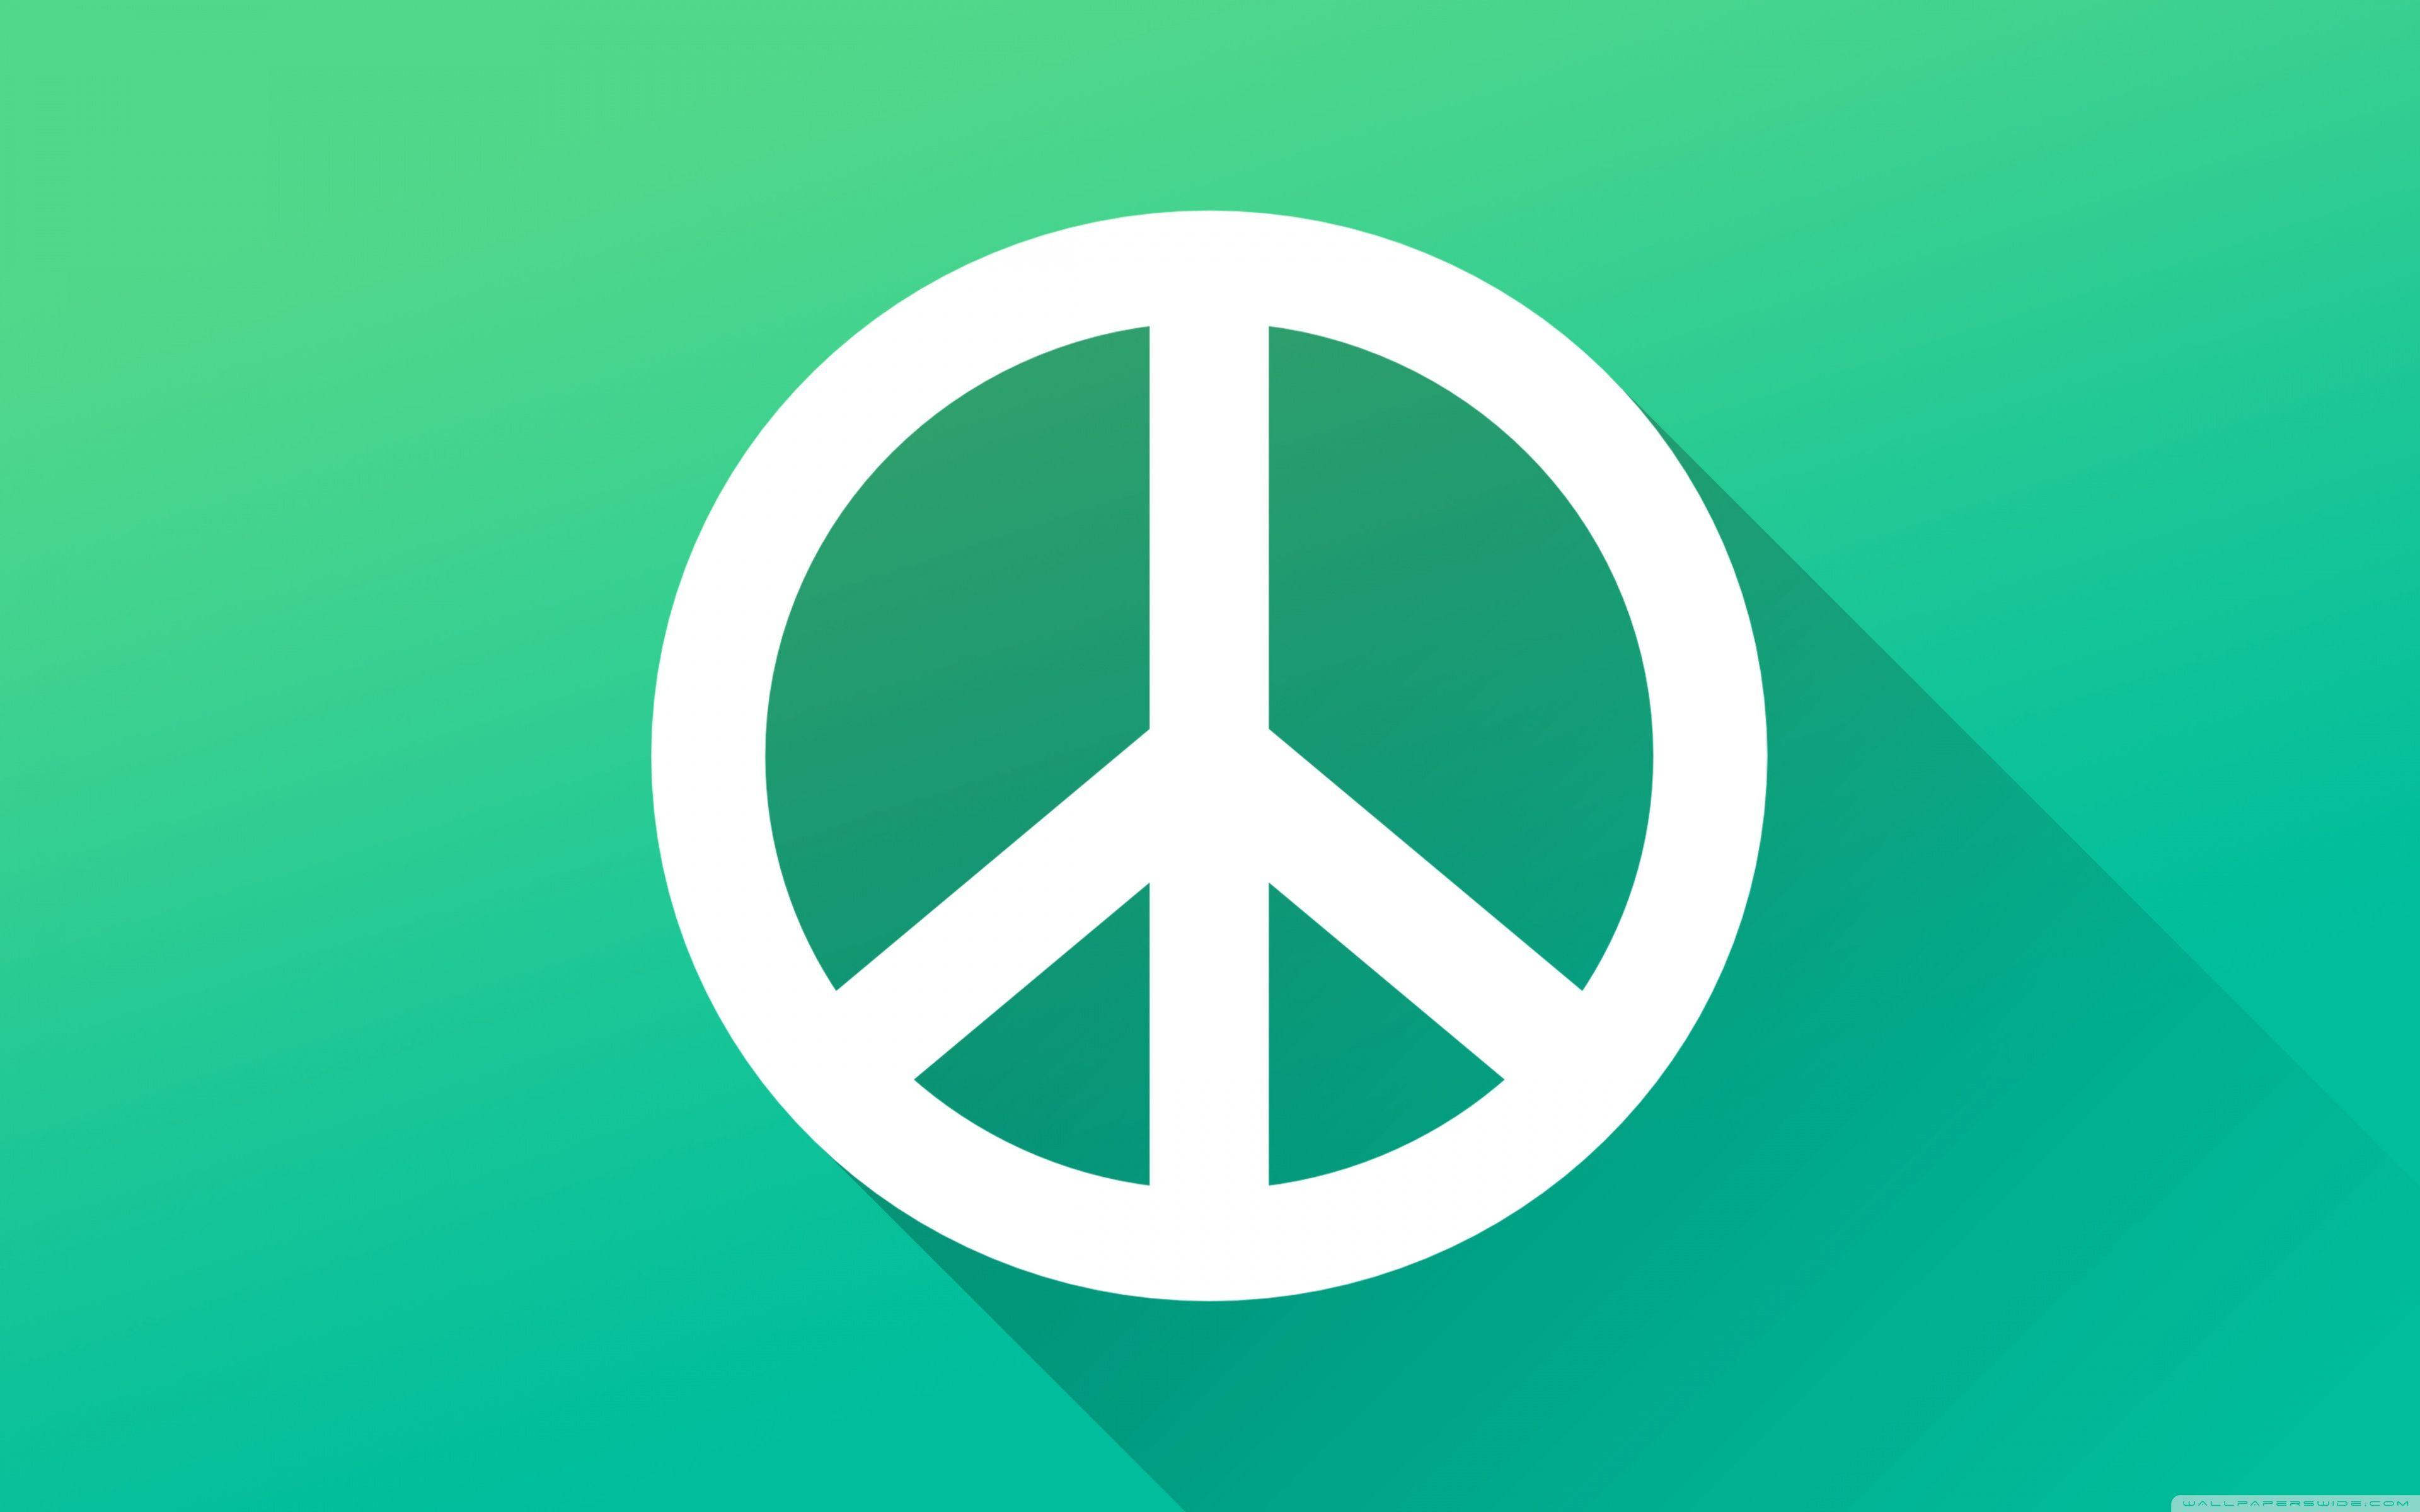 Peace logo HD phone wallpaper  Peakpx